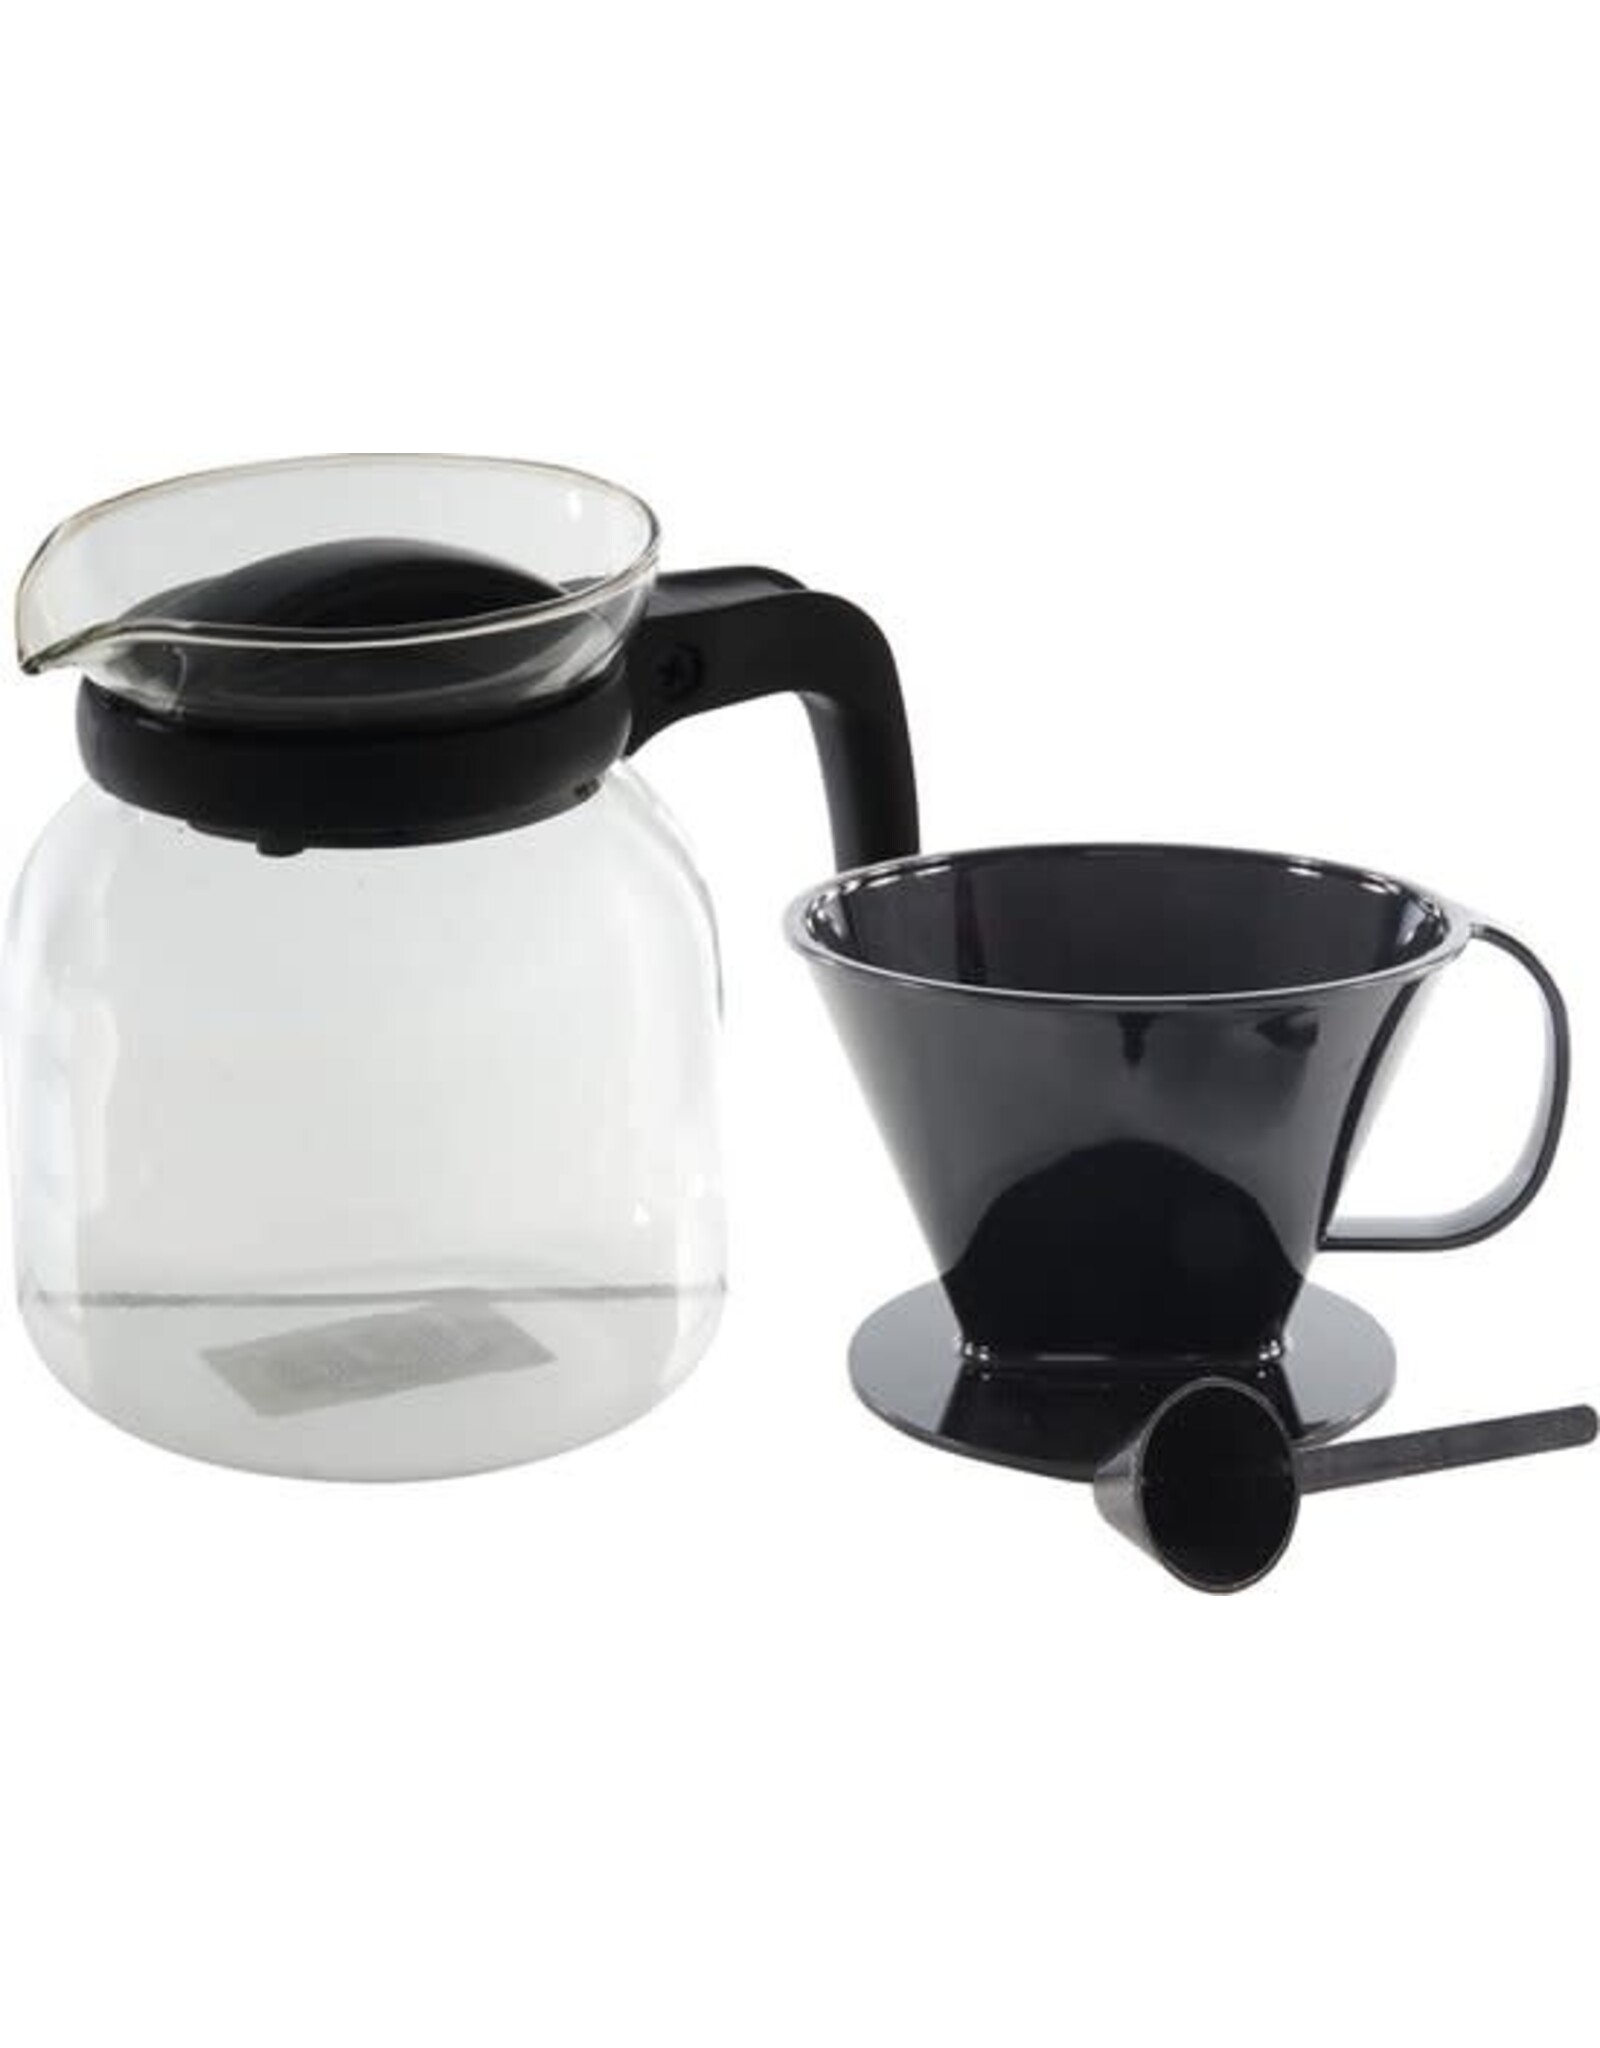 MERKLOOS Koffiepot van Glas - 1.2 Liter - Inclusief Filterhouder en Maatschepje